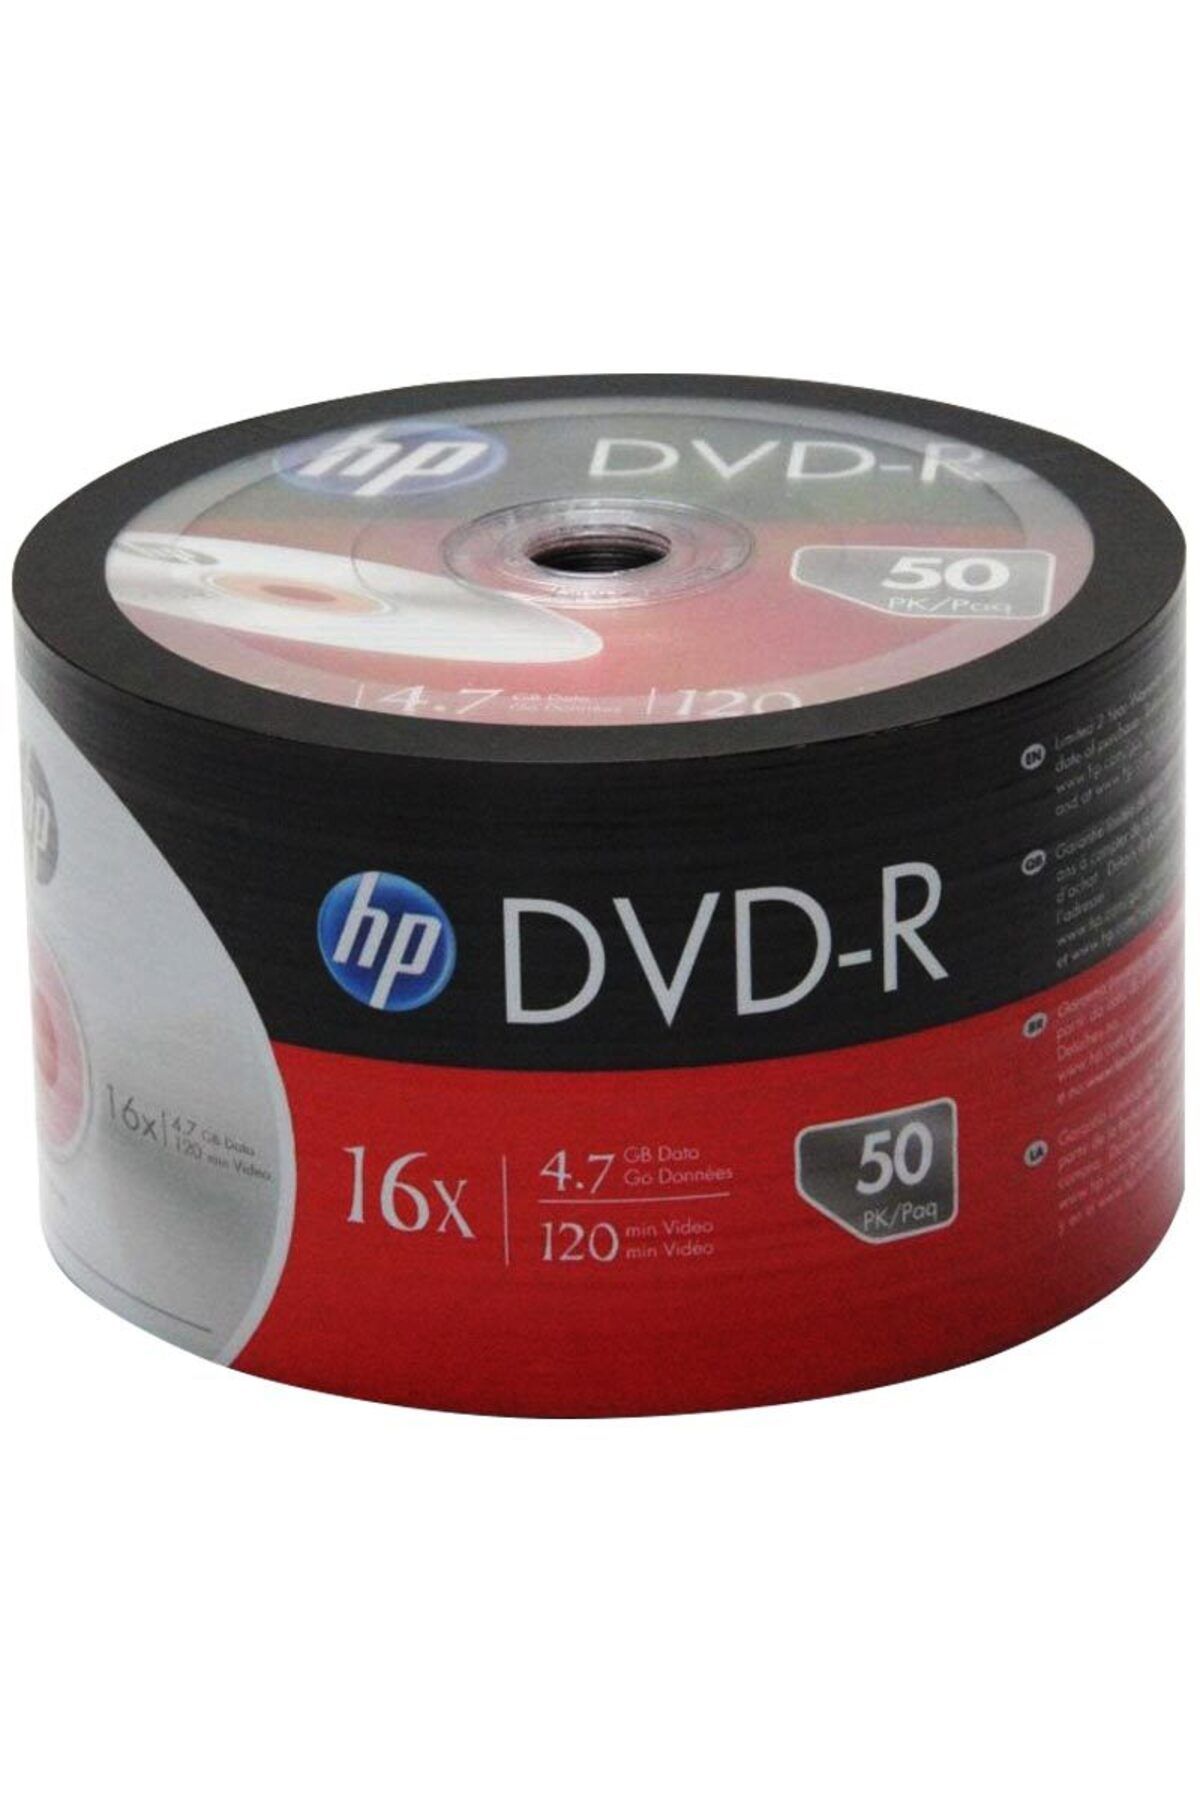 Go İthalat HP DME00070-3 DVD-R 4.7 GB 120 MİN 16X 50Lİ PAKET FİYAT (4199)